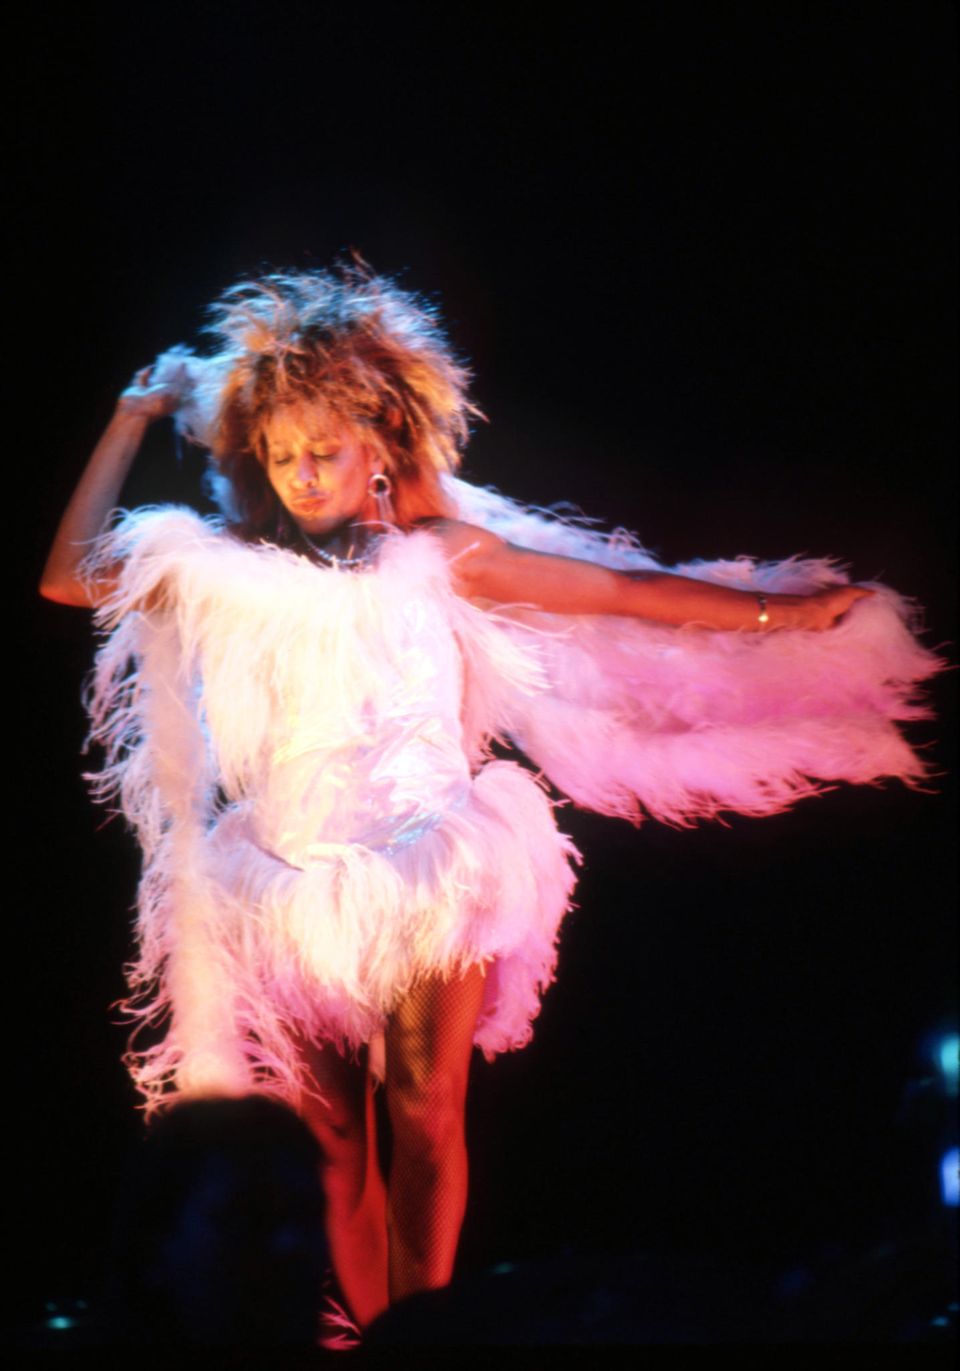 Tina Turner während ihrer "Private Dancer Tour" in Detroit, 1985